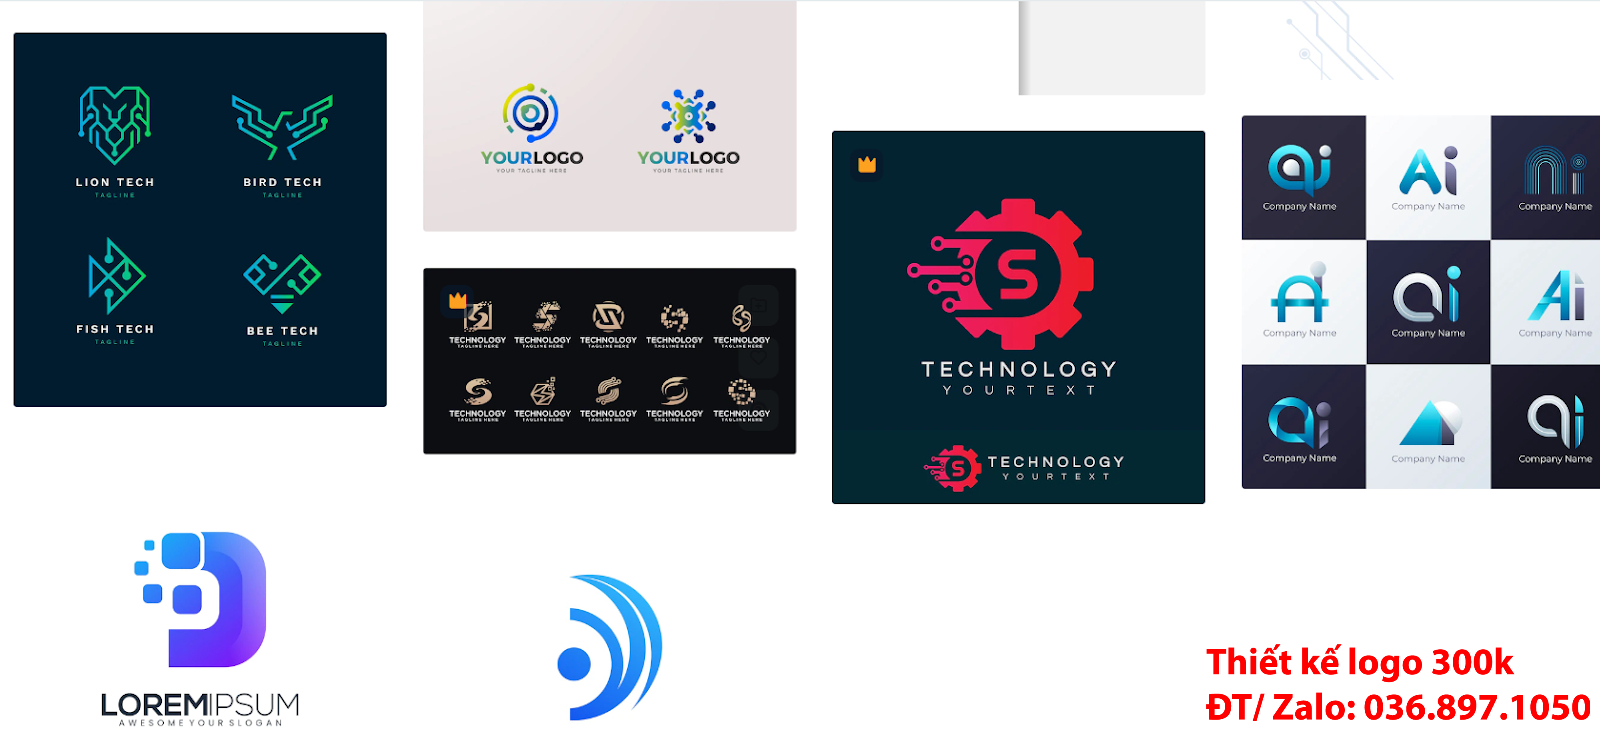 Dịch vụ cung cấp các Thiết Kế Logo công ty công nghệ đẹp giá rẻ chuyên nghiệp 500k